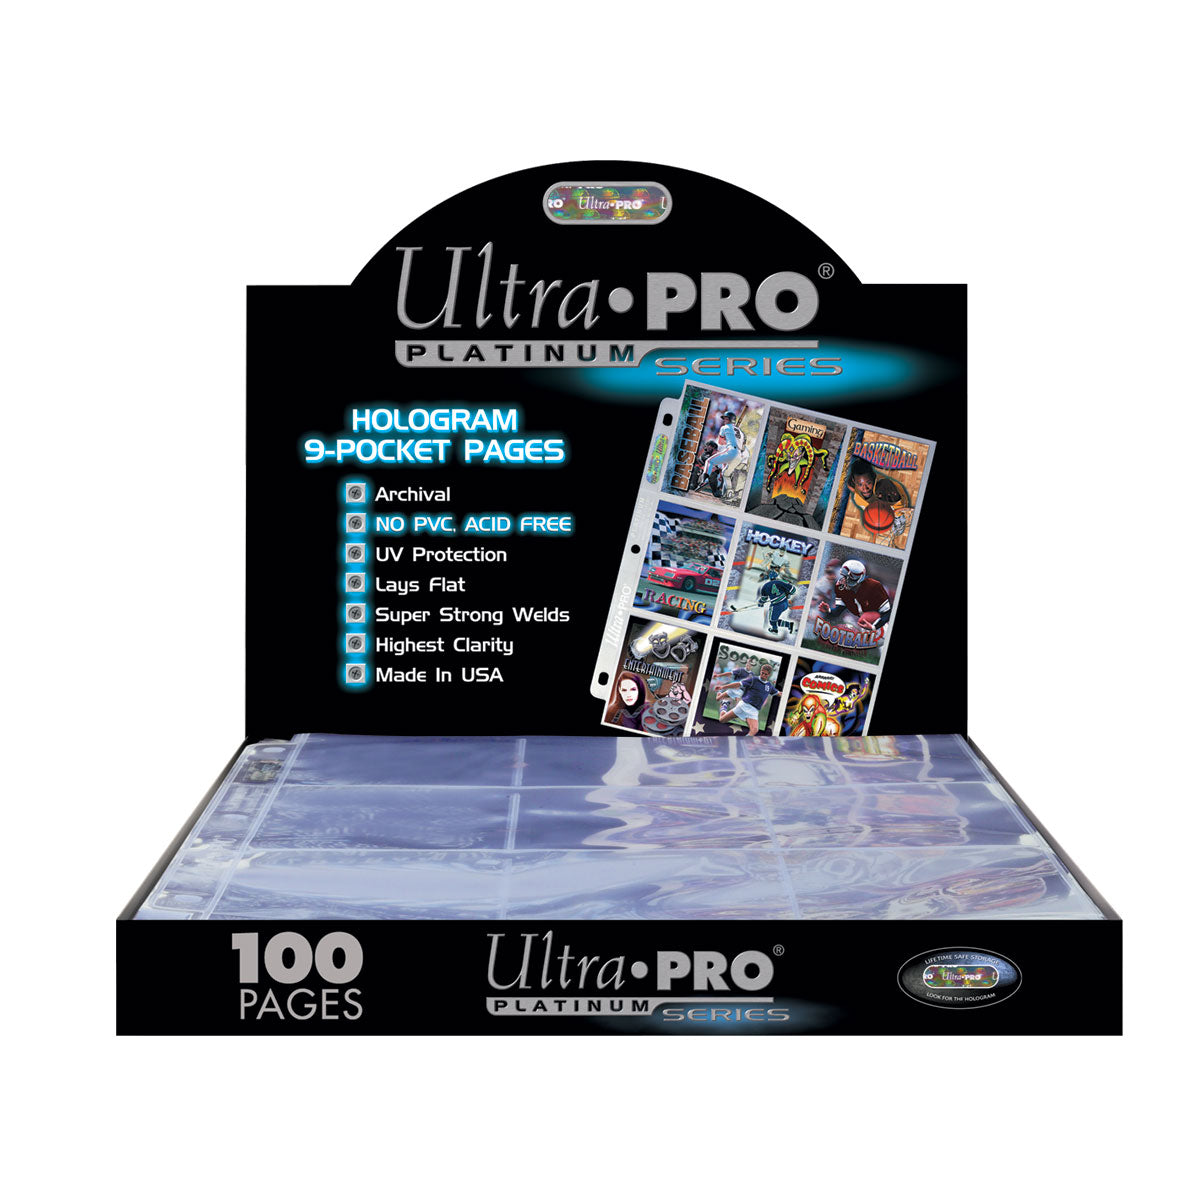 Ultra Pro Classeur 4 pochettes : bleu cobalt collector